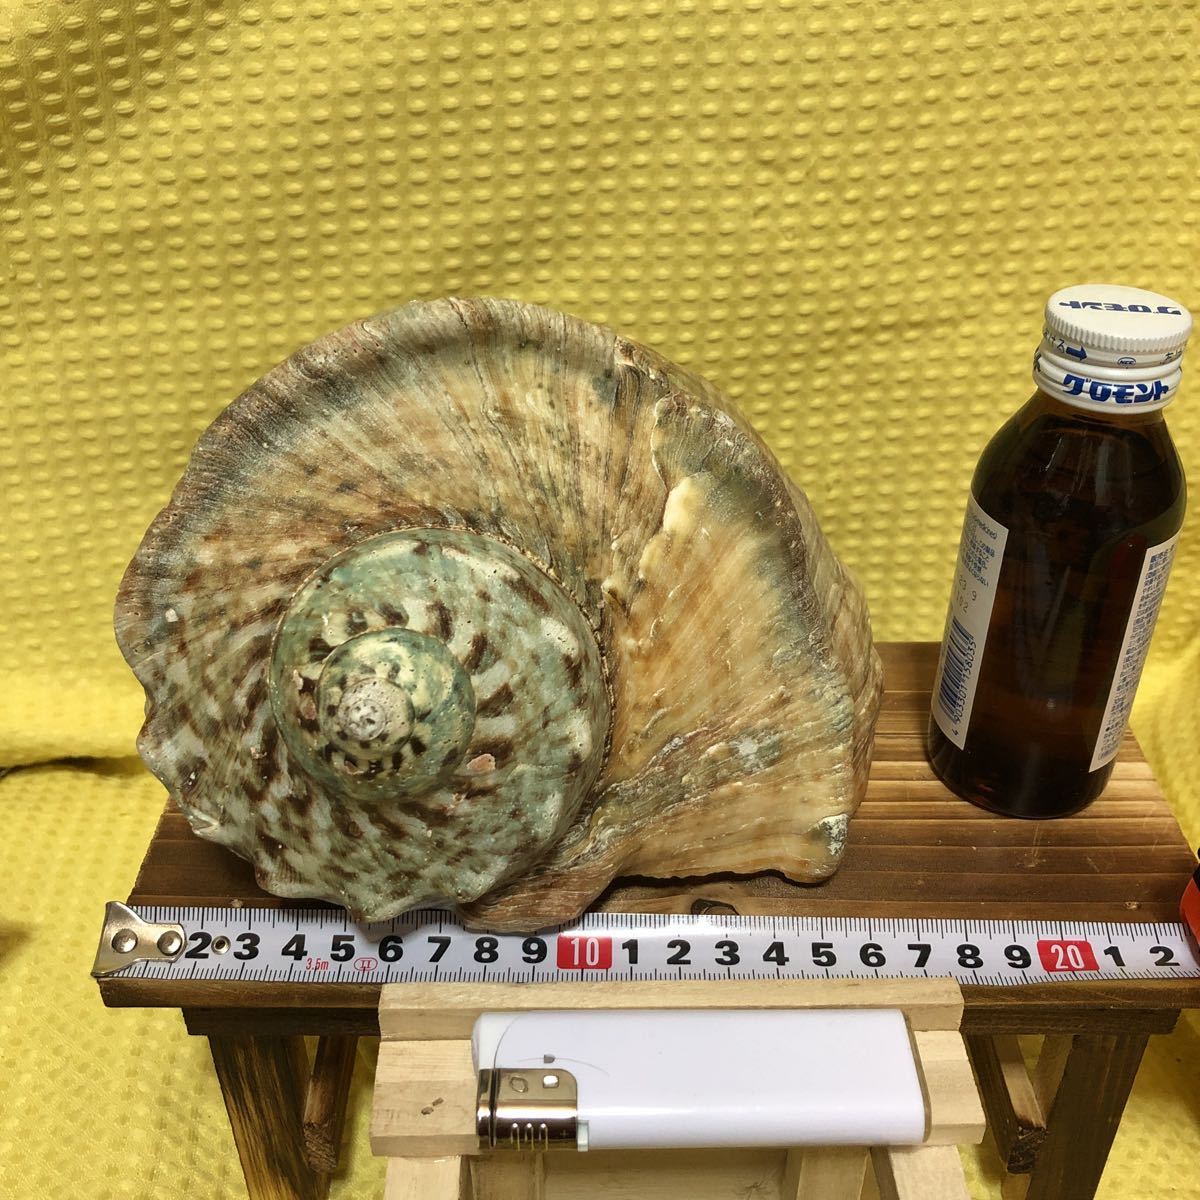 貝殻 沖縄の値段と価格推移は 212件の売買情報を集計した貝殻 沖縄の価格や価値の推移データを公開